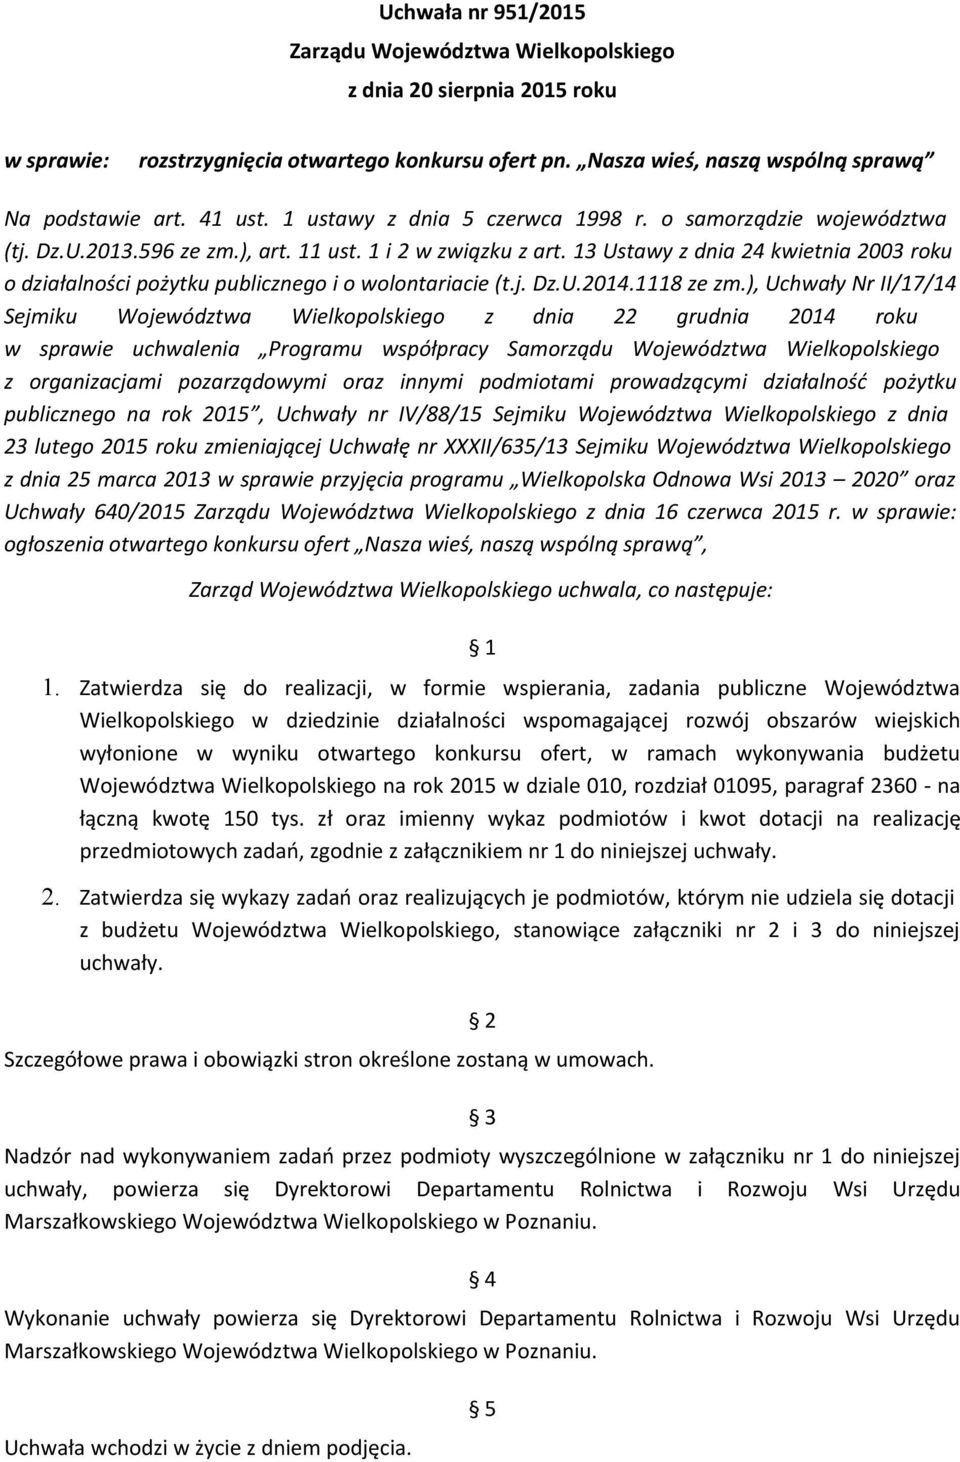 13 Ustawy z dnia 24 kwietnia 2003 roku o działalności pożytku publicznego i o wolontariacie (t.j. Dz.U.2014.1118 ze zm.